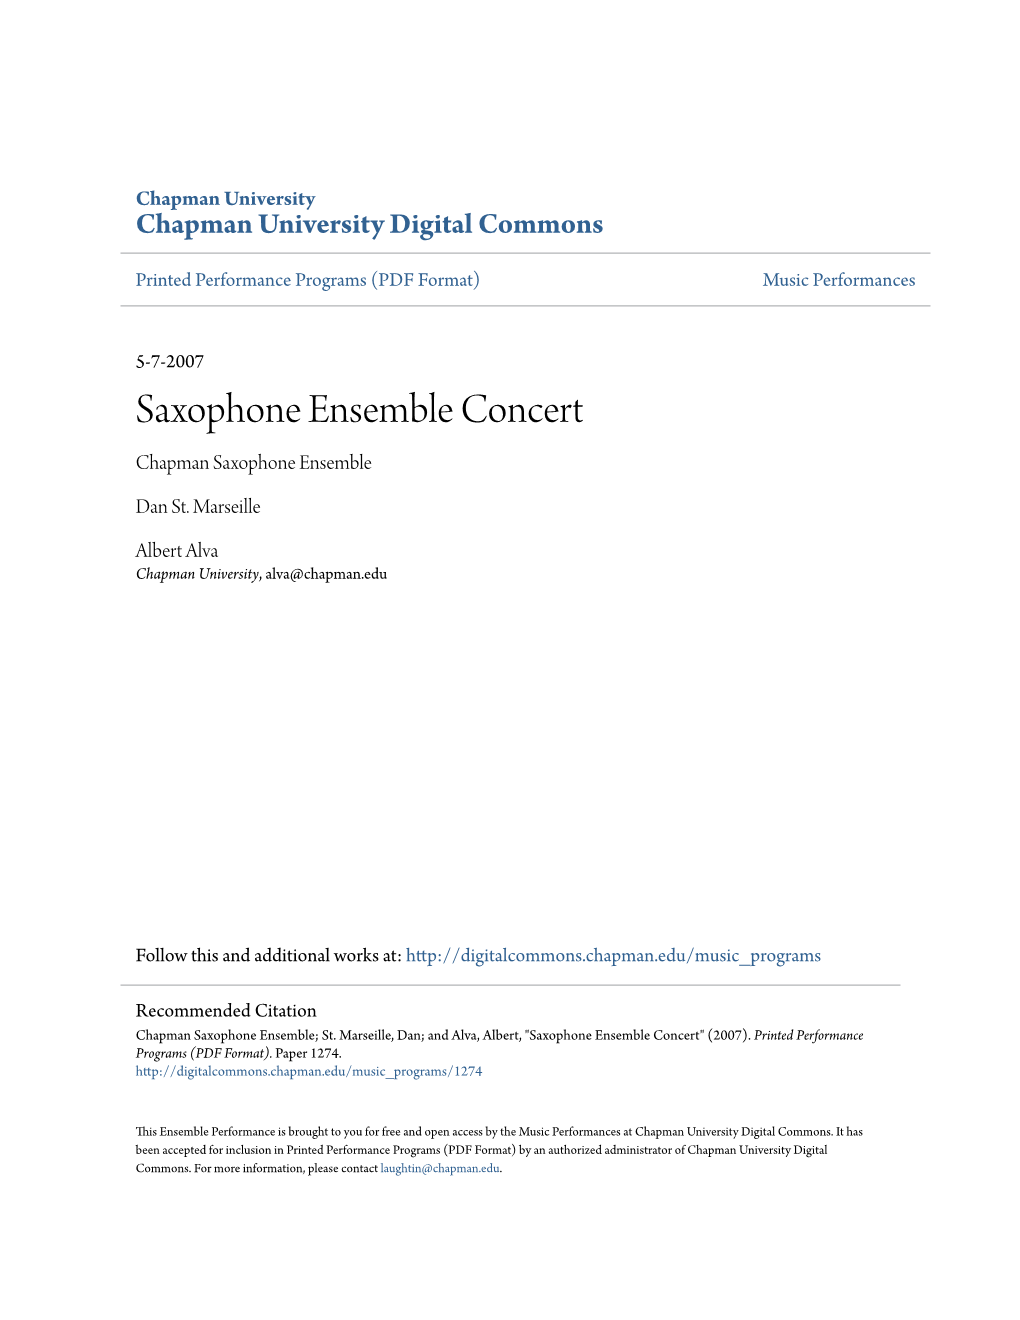 Saxophone Ensemble Concert Chapman Saxophone Ensemble